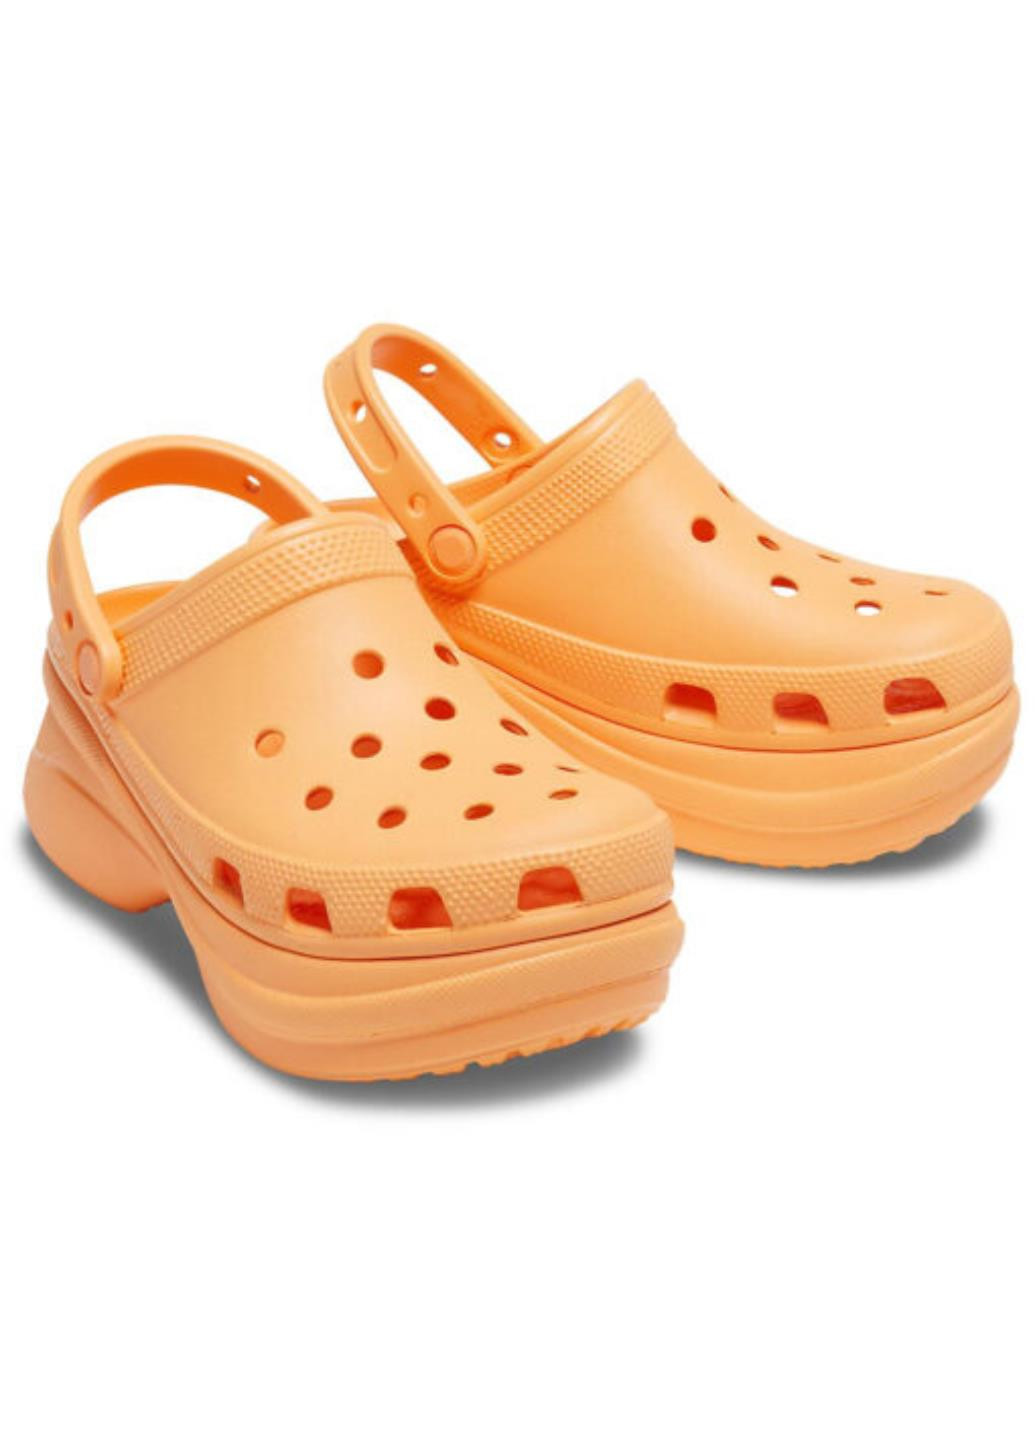 Оранжевые сабо Crocs на платформе